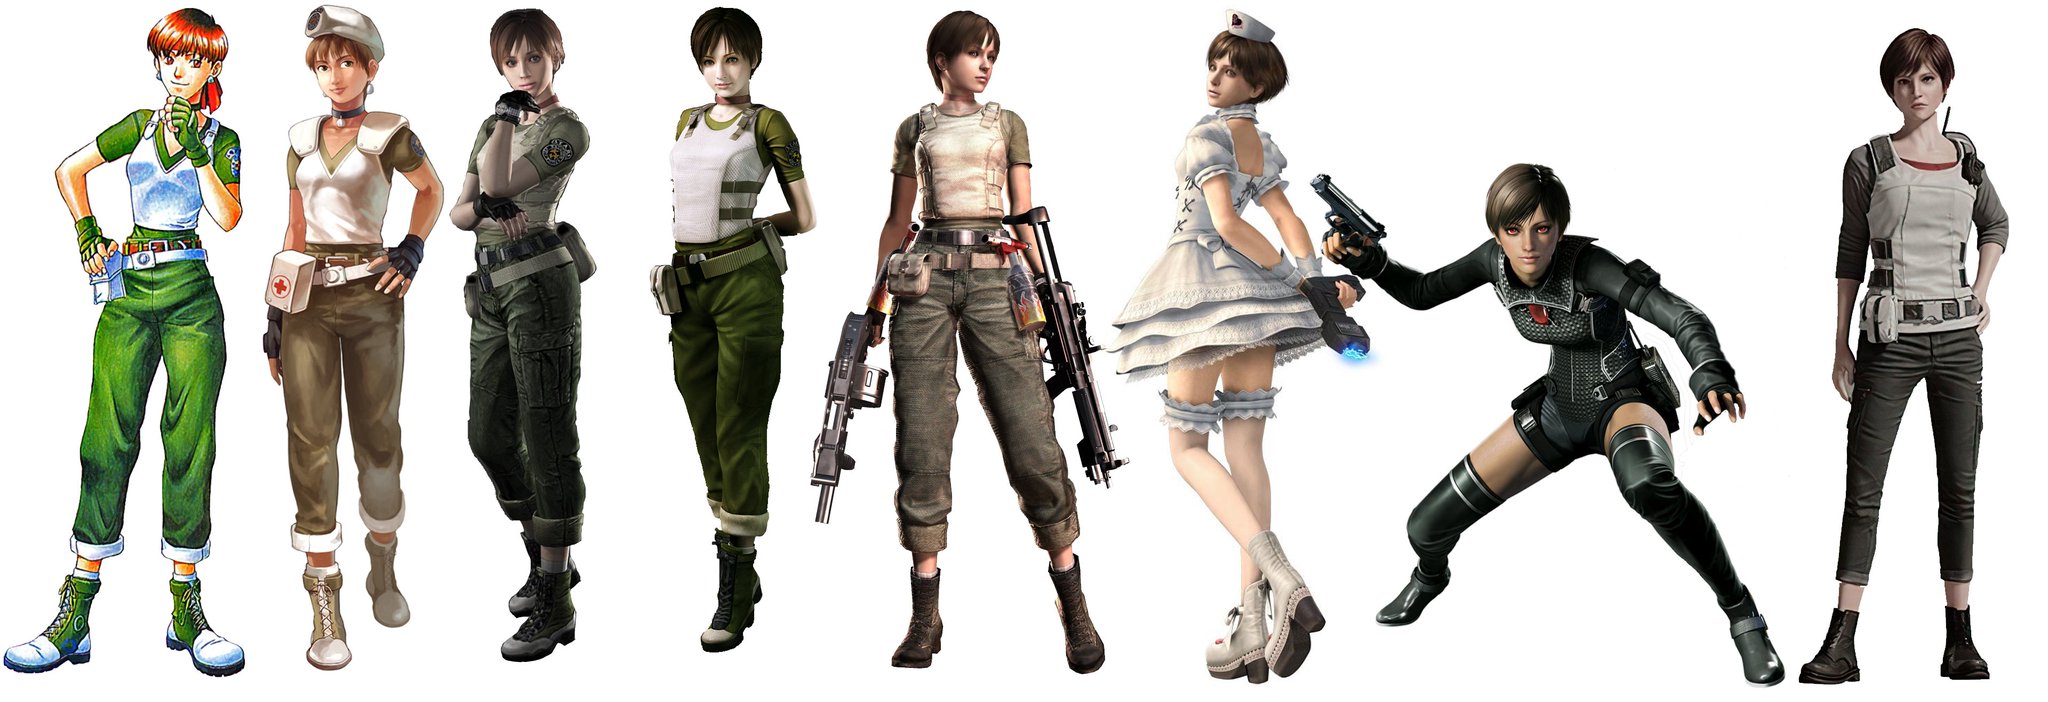 “Rebecca Chambers Evolution 1.) Resident Evil - 1996 2.) Resident Evil 0 - ...